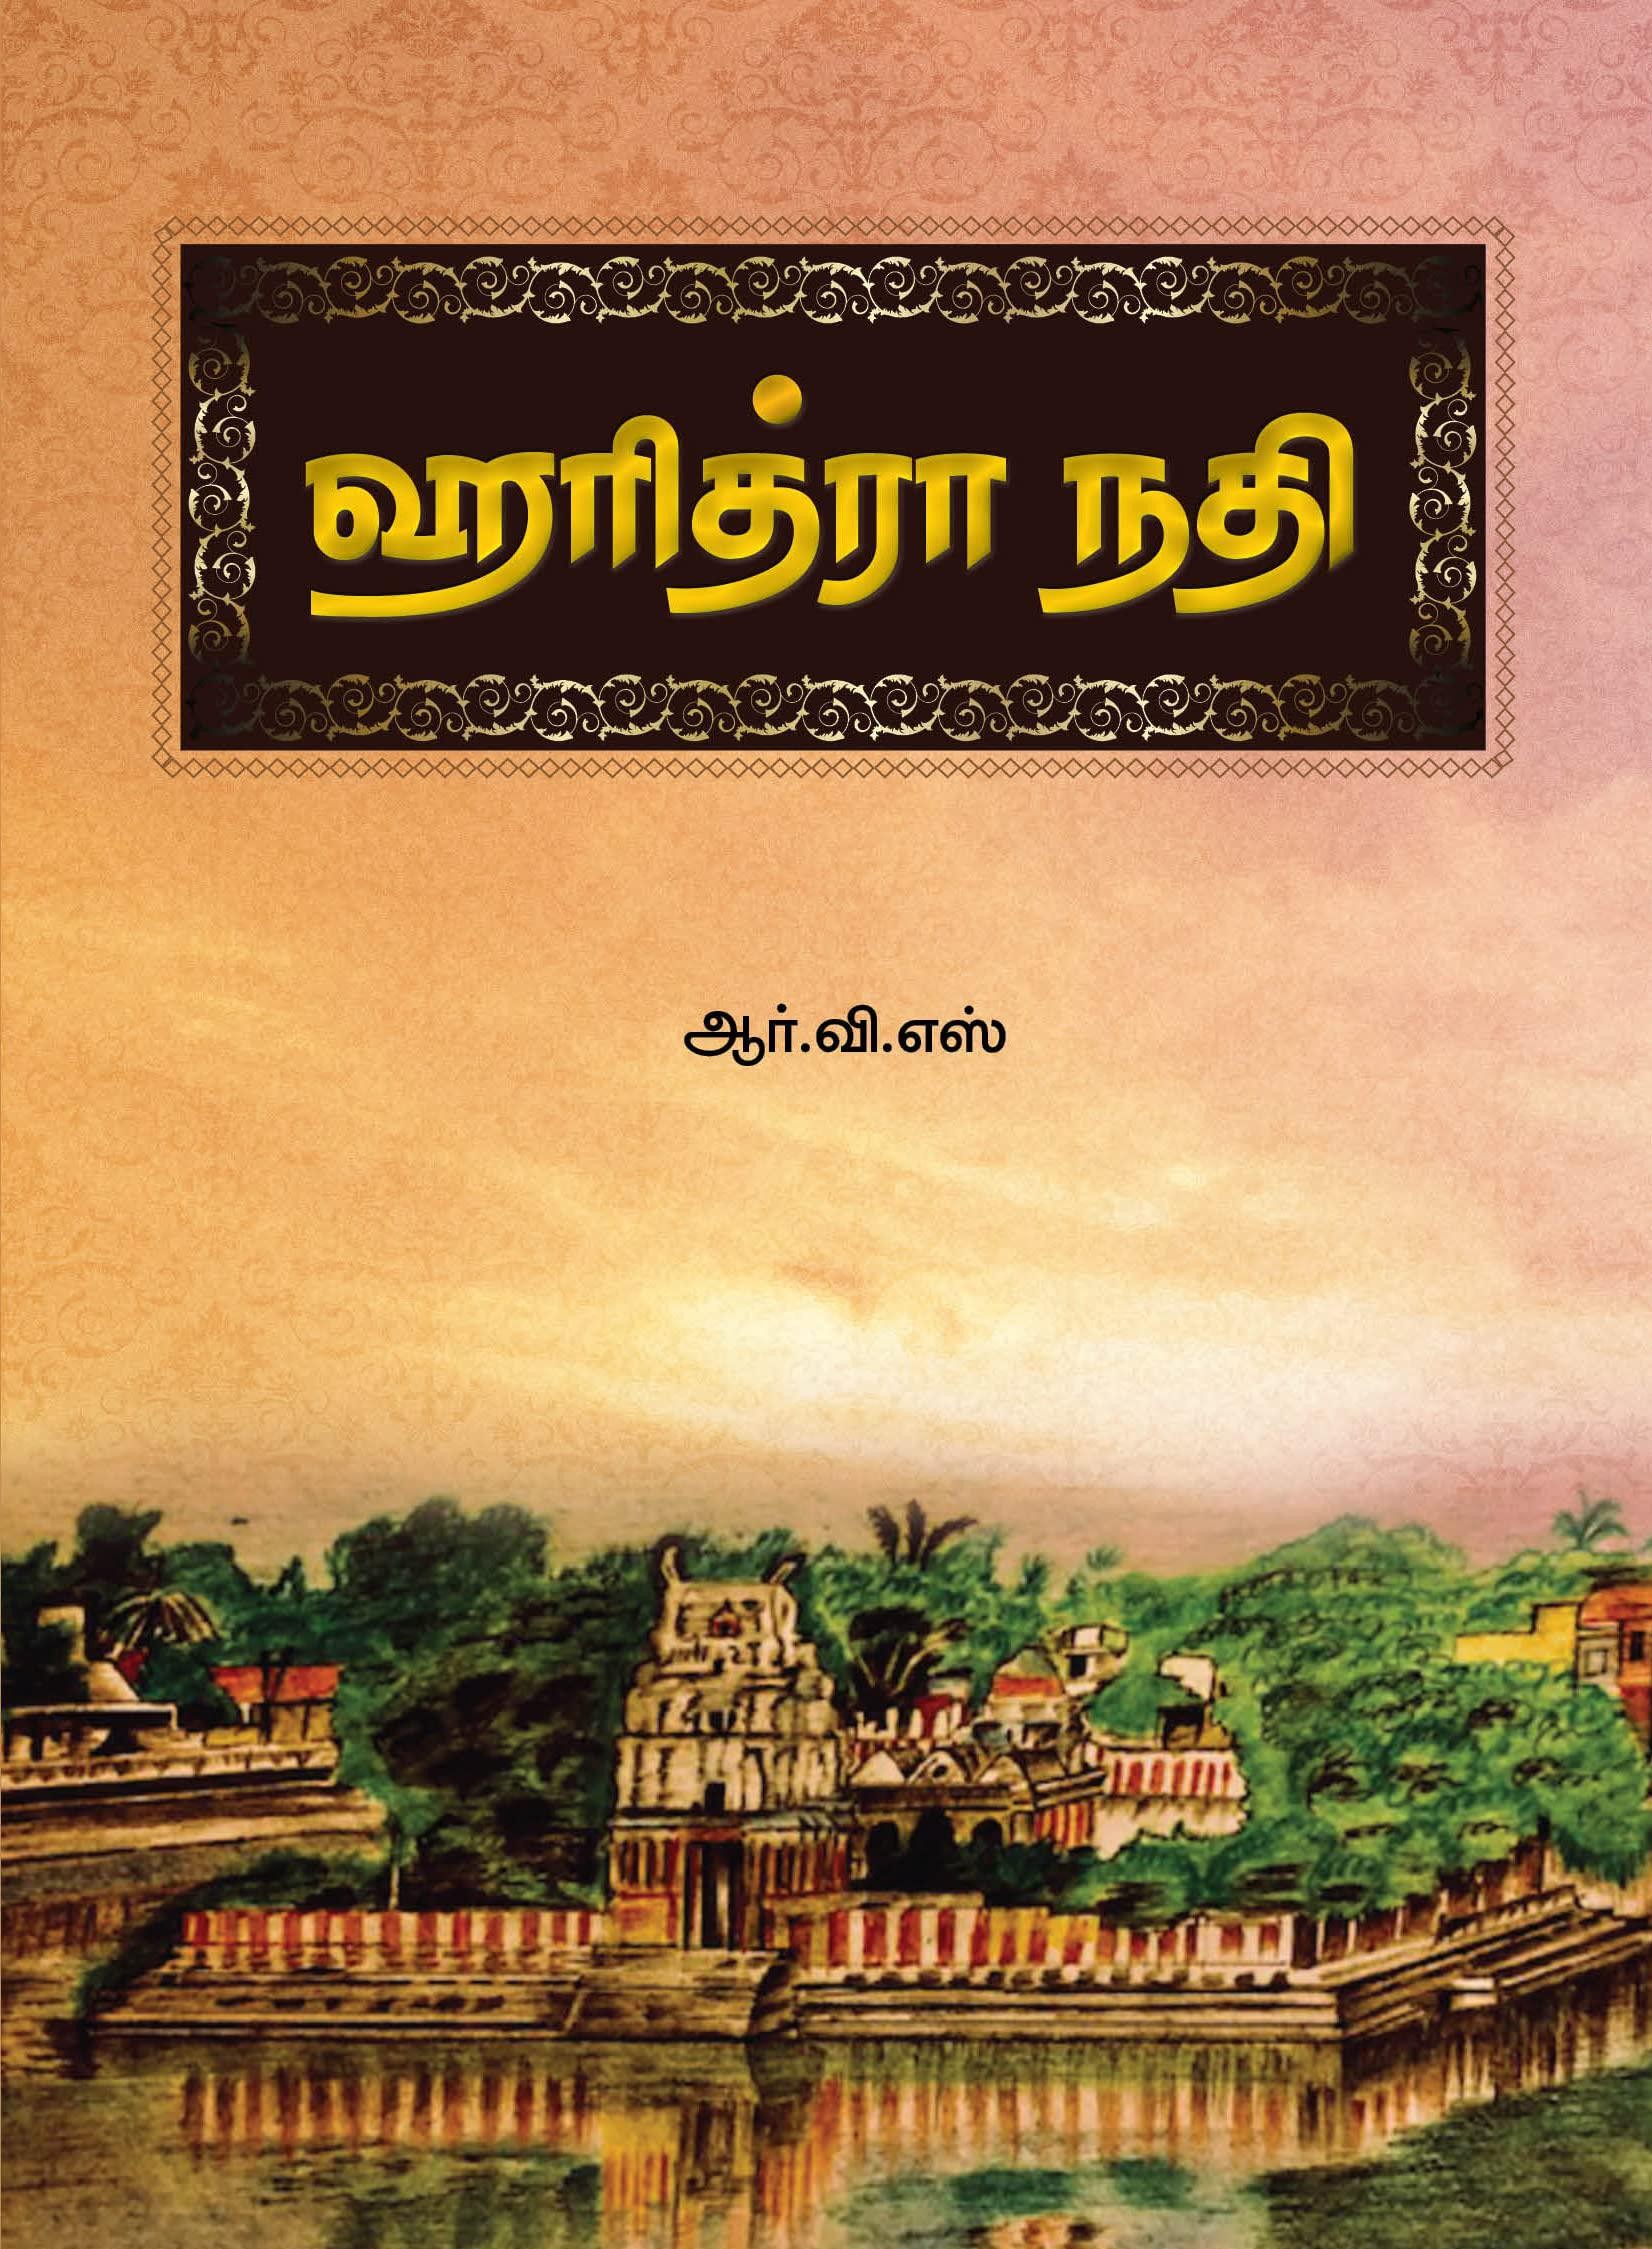 ஹரித்ரா நதிbook